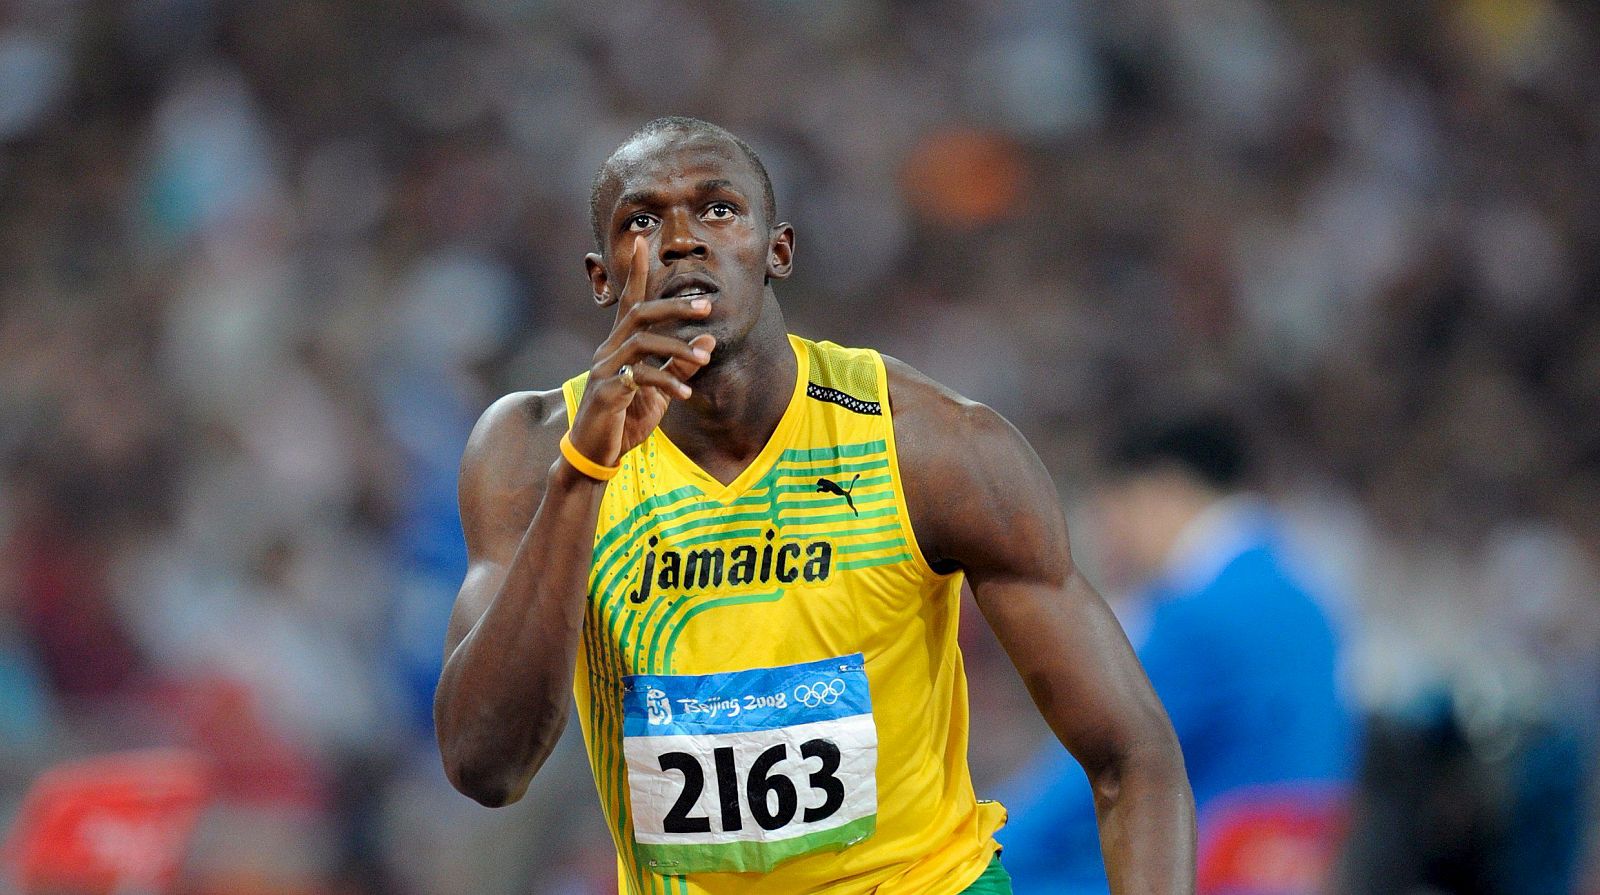 El jamaicano Usain Bolt pasa a la final de los 200 metros.